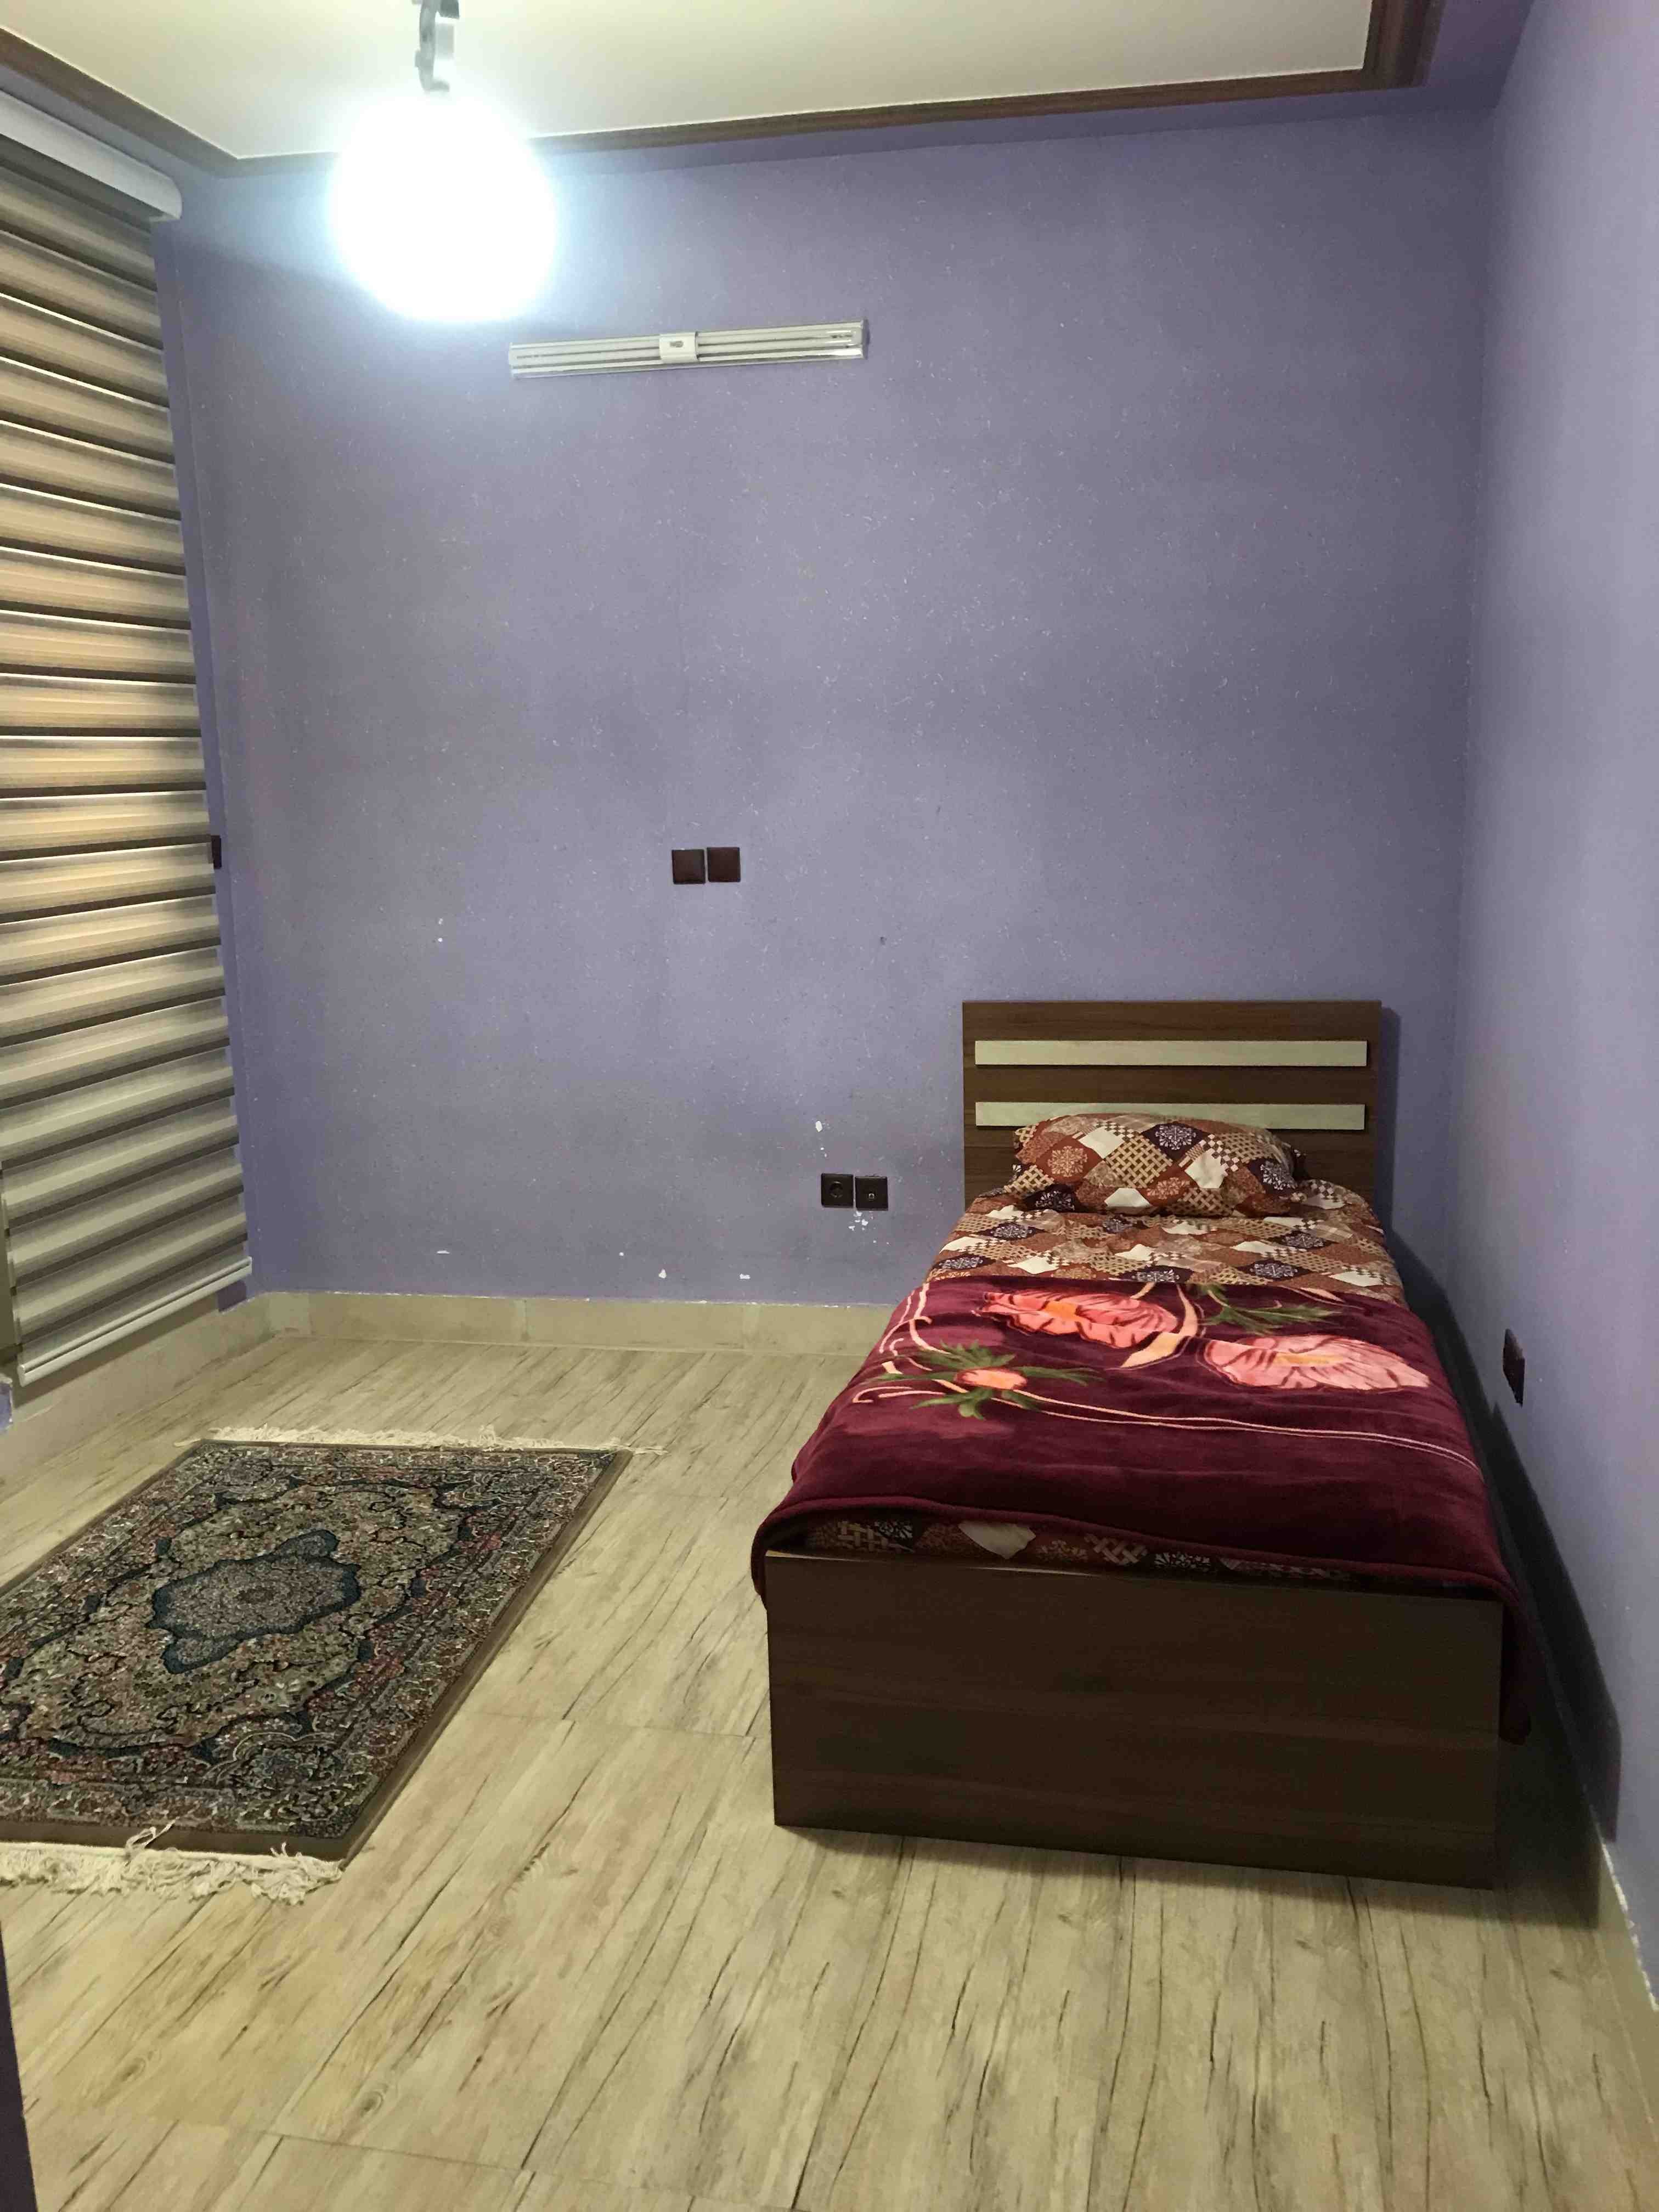 شهری اجاره آپارتمان دو خواب در دلگشا شیراز